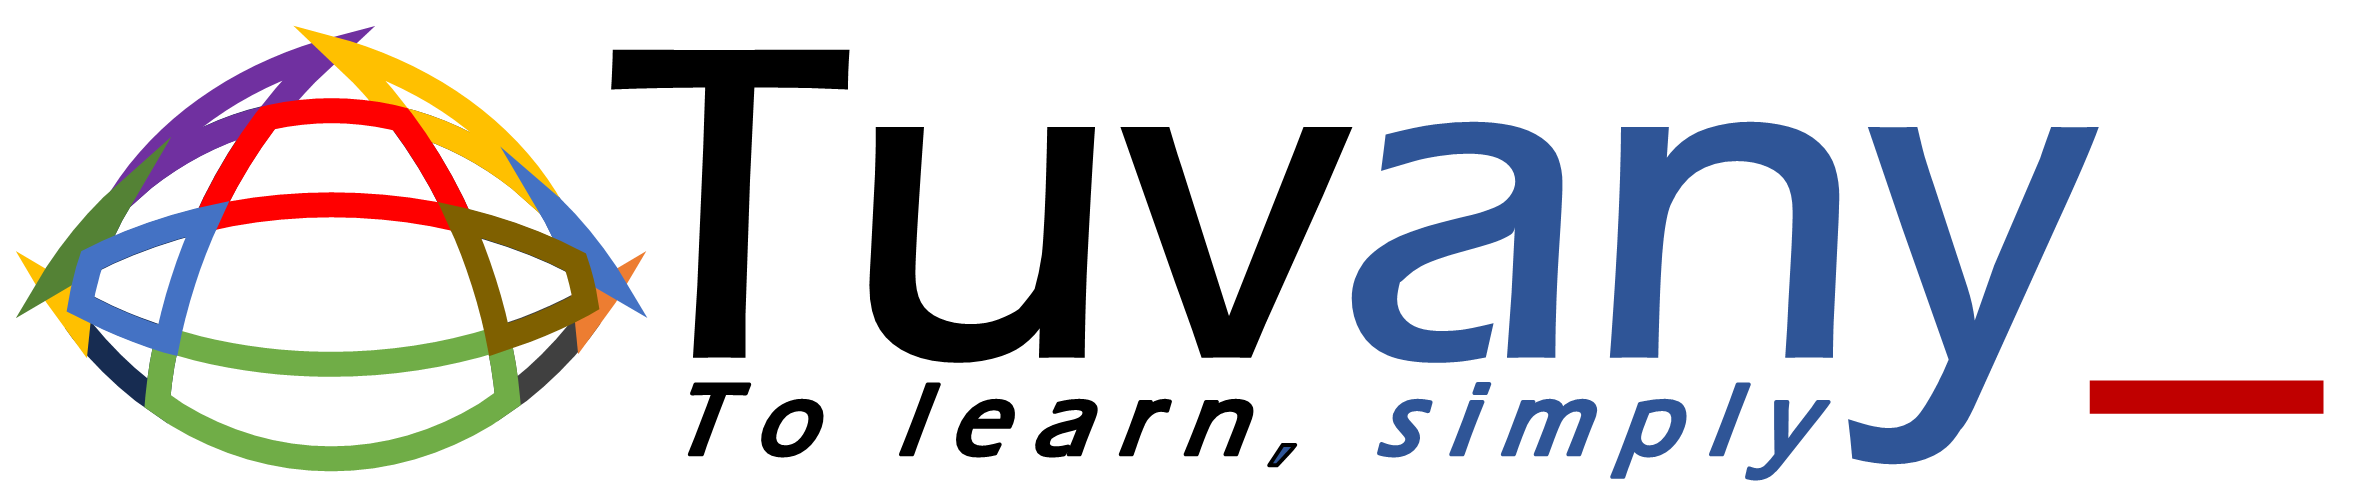 Tuvany logo